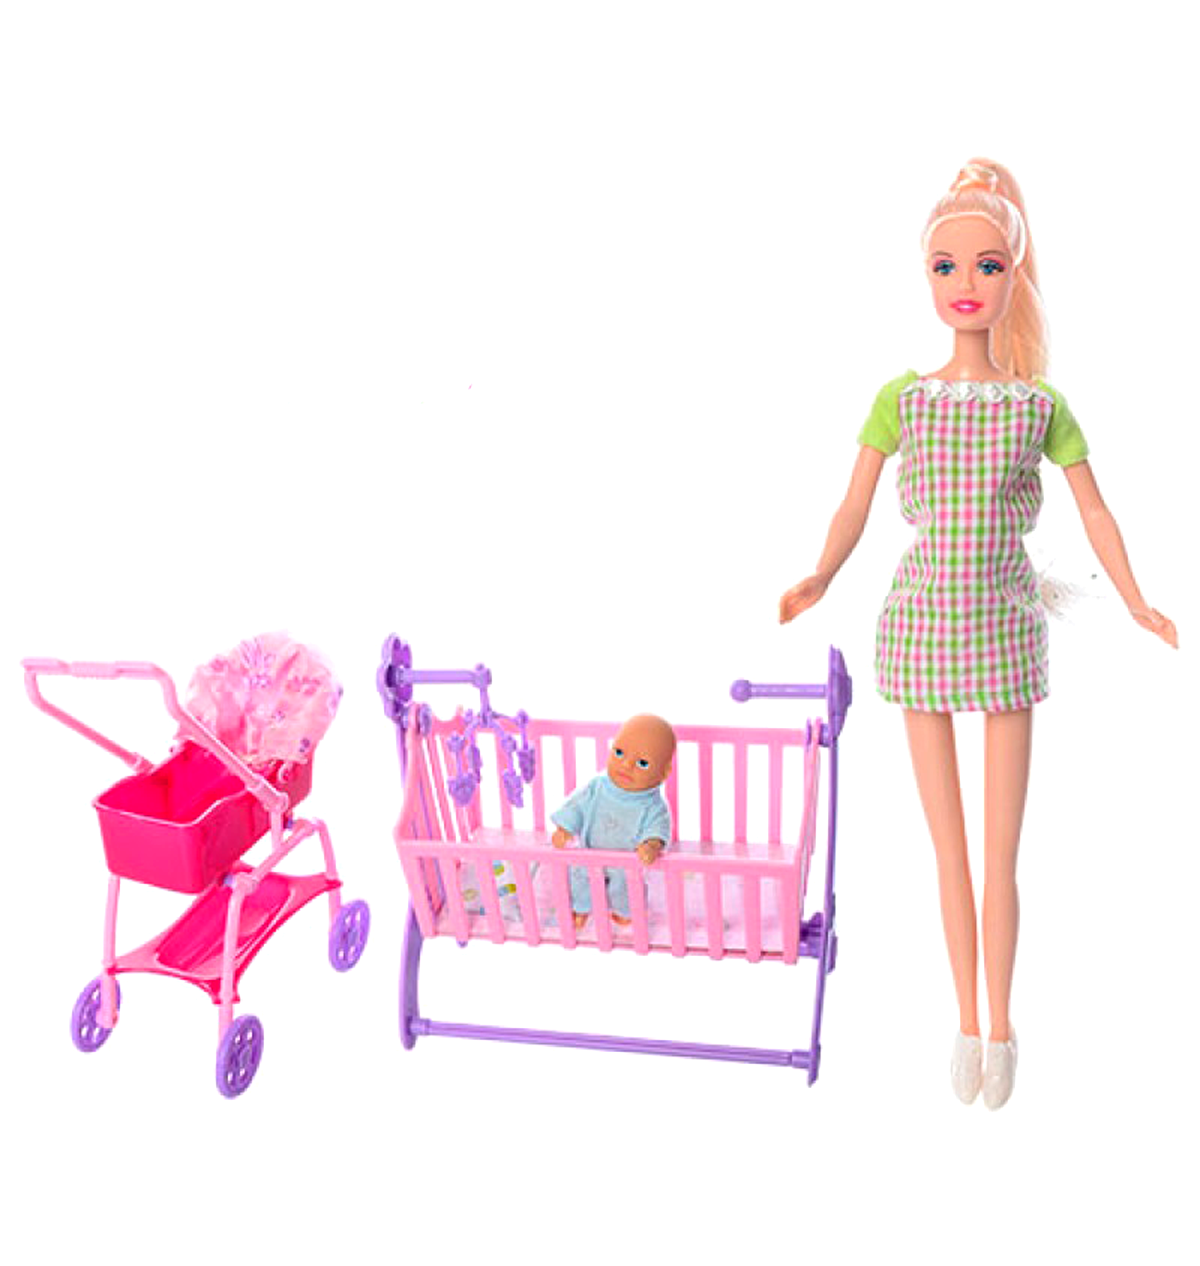 Кукла Defa беременная с ребёнком коляской кроваткой